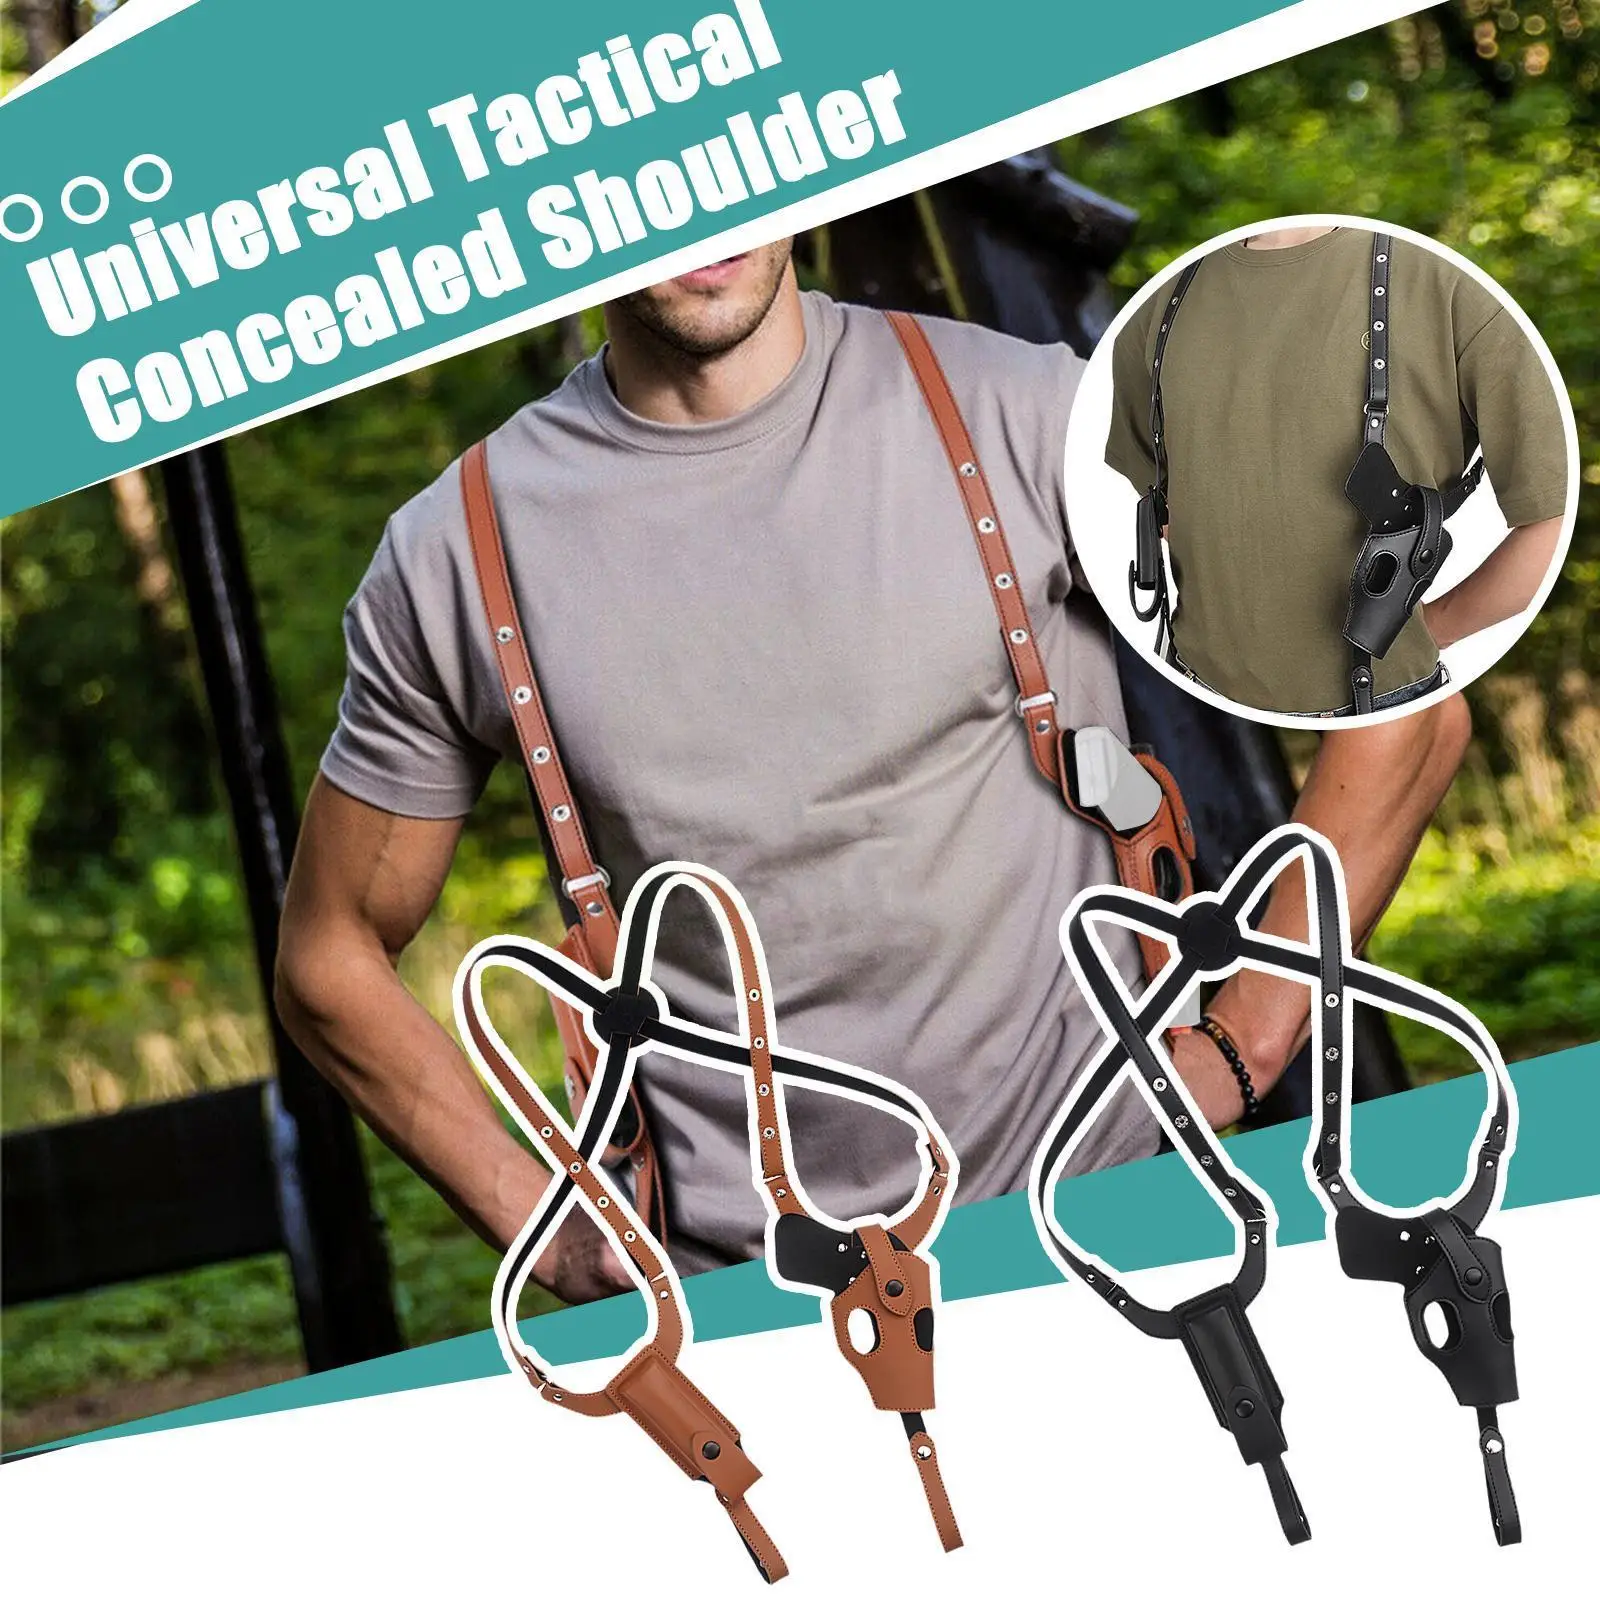 

Men's Leather Pistol Shoulder Holster Double Pull Adjustable Vertical Universal Underarm Shoulder Bag Holster Carry Invisib H5m6